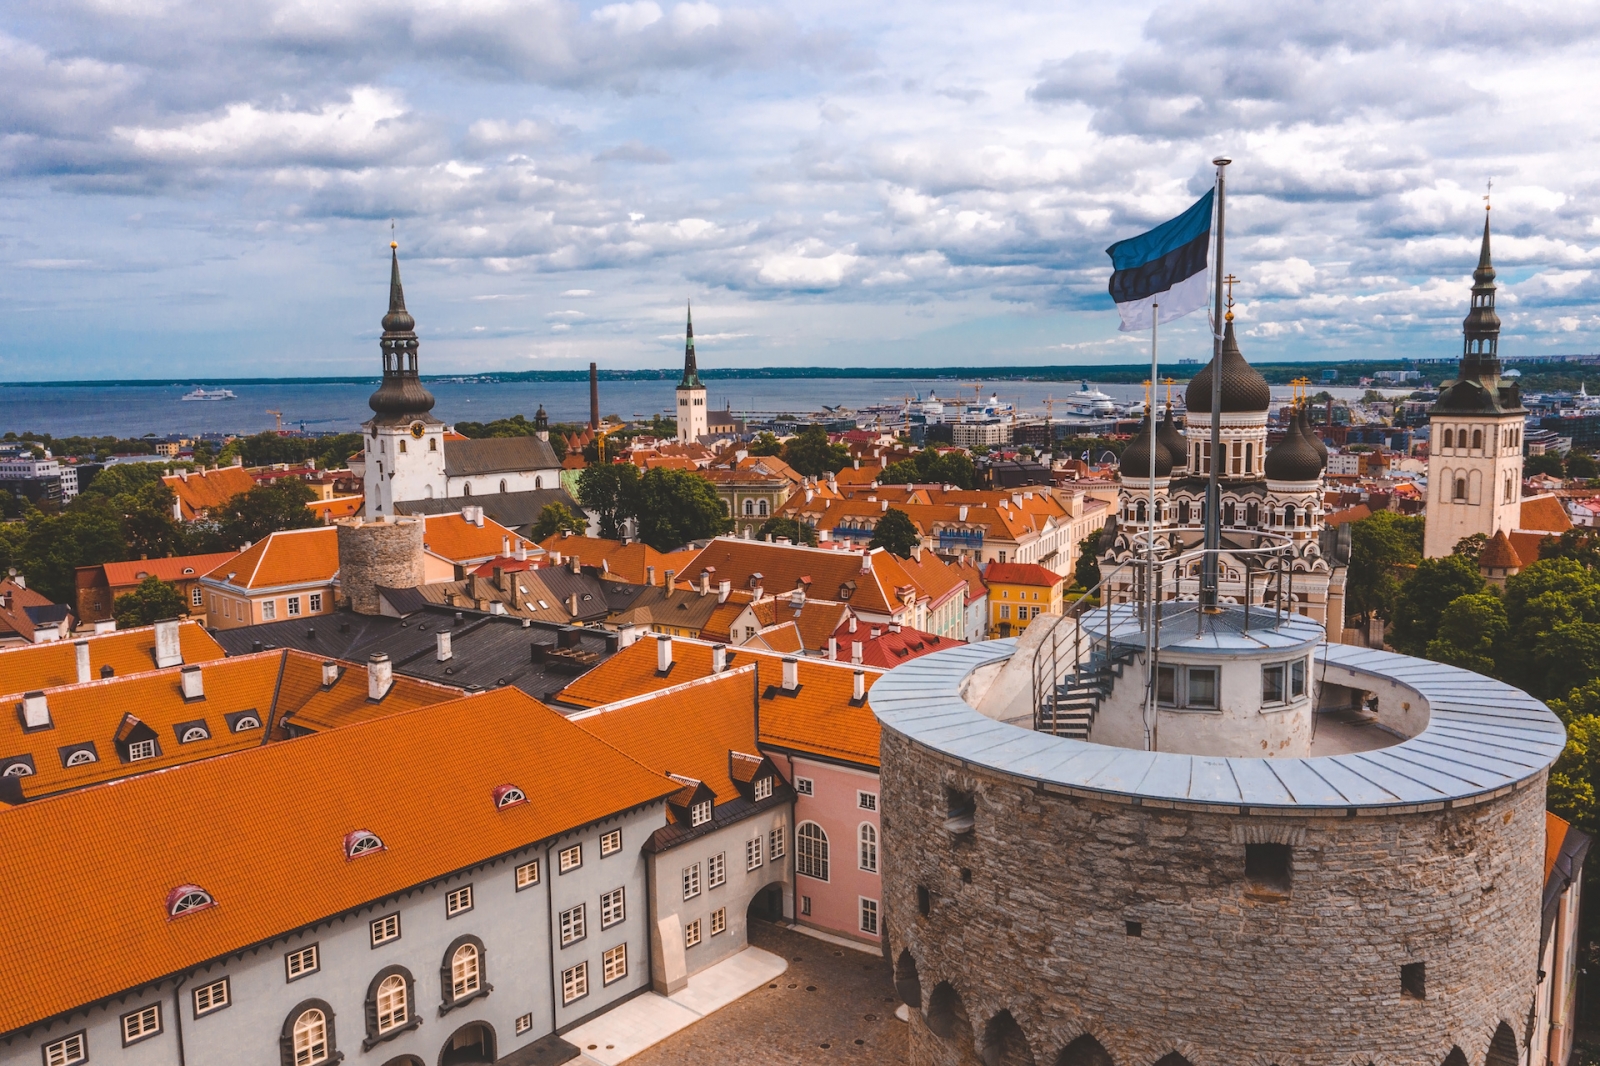 Nahaufnahme der estnischen Flagge auf dem alten mittelalterlichen Turm.